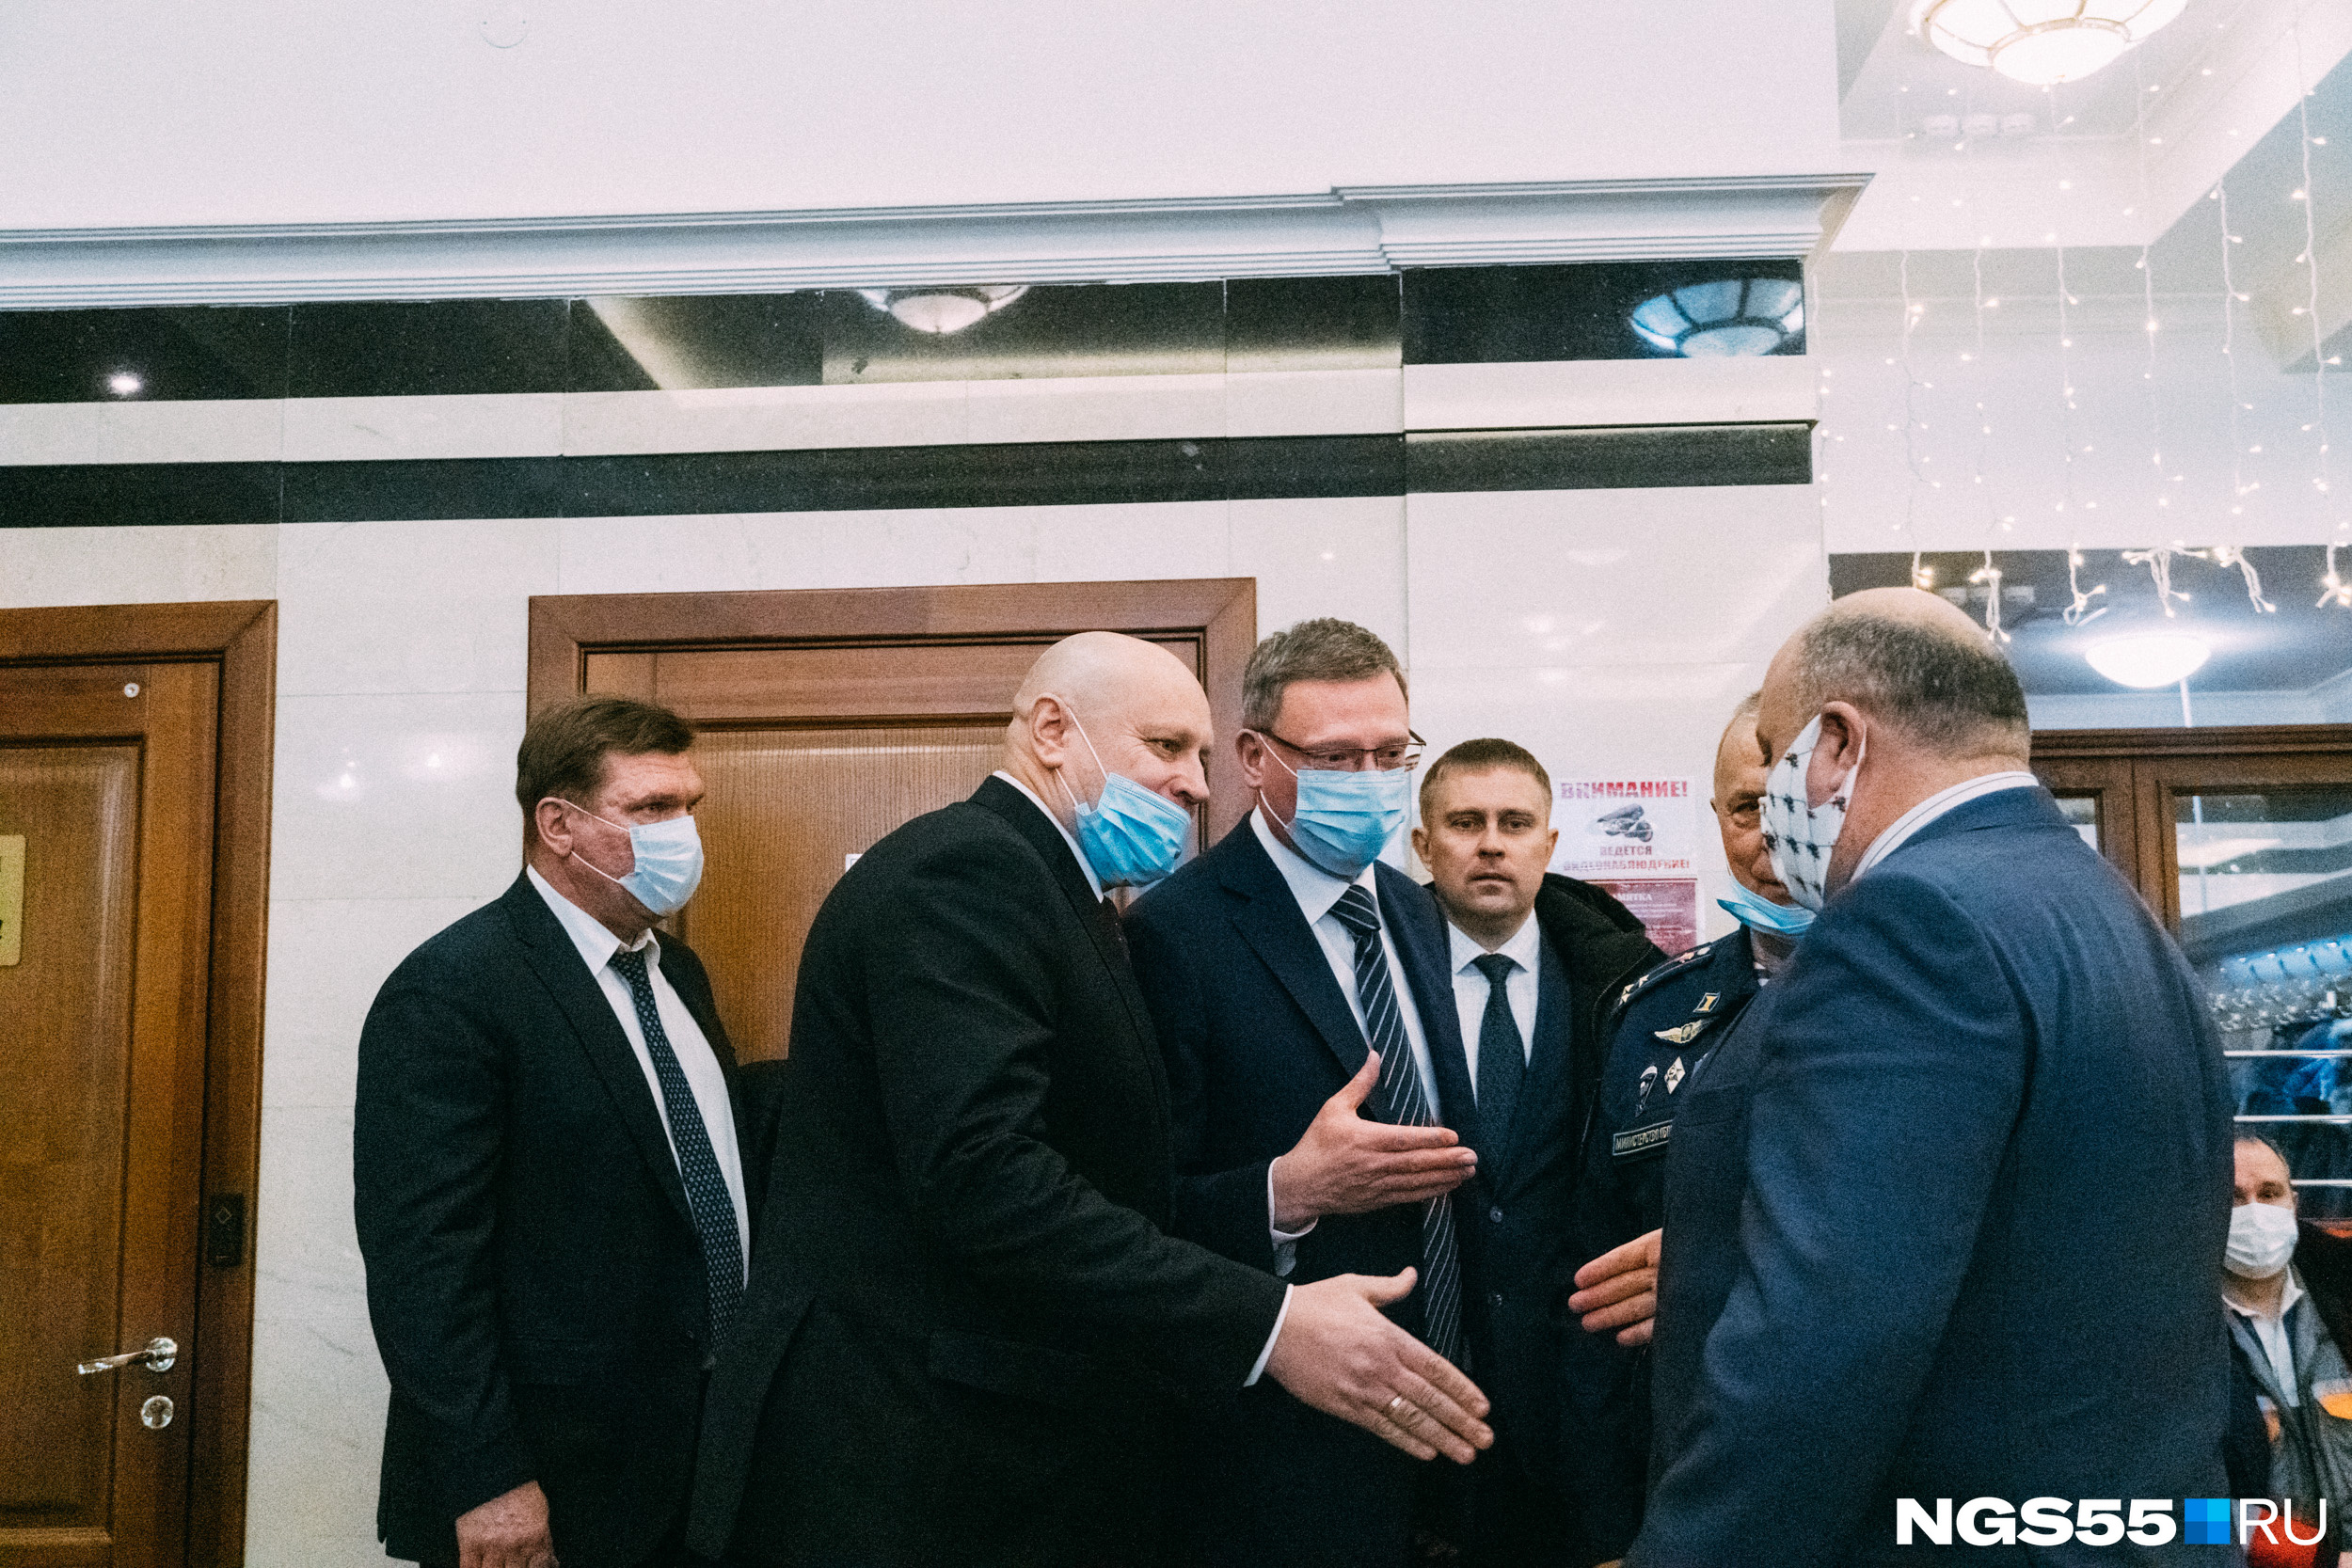 Губернатор Александр Бурков и мэр Сергей Шелест стоят плечом к плечу. Что будет происходить в их отношениях дальше, как говорится, покажет время